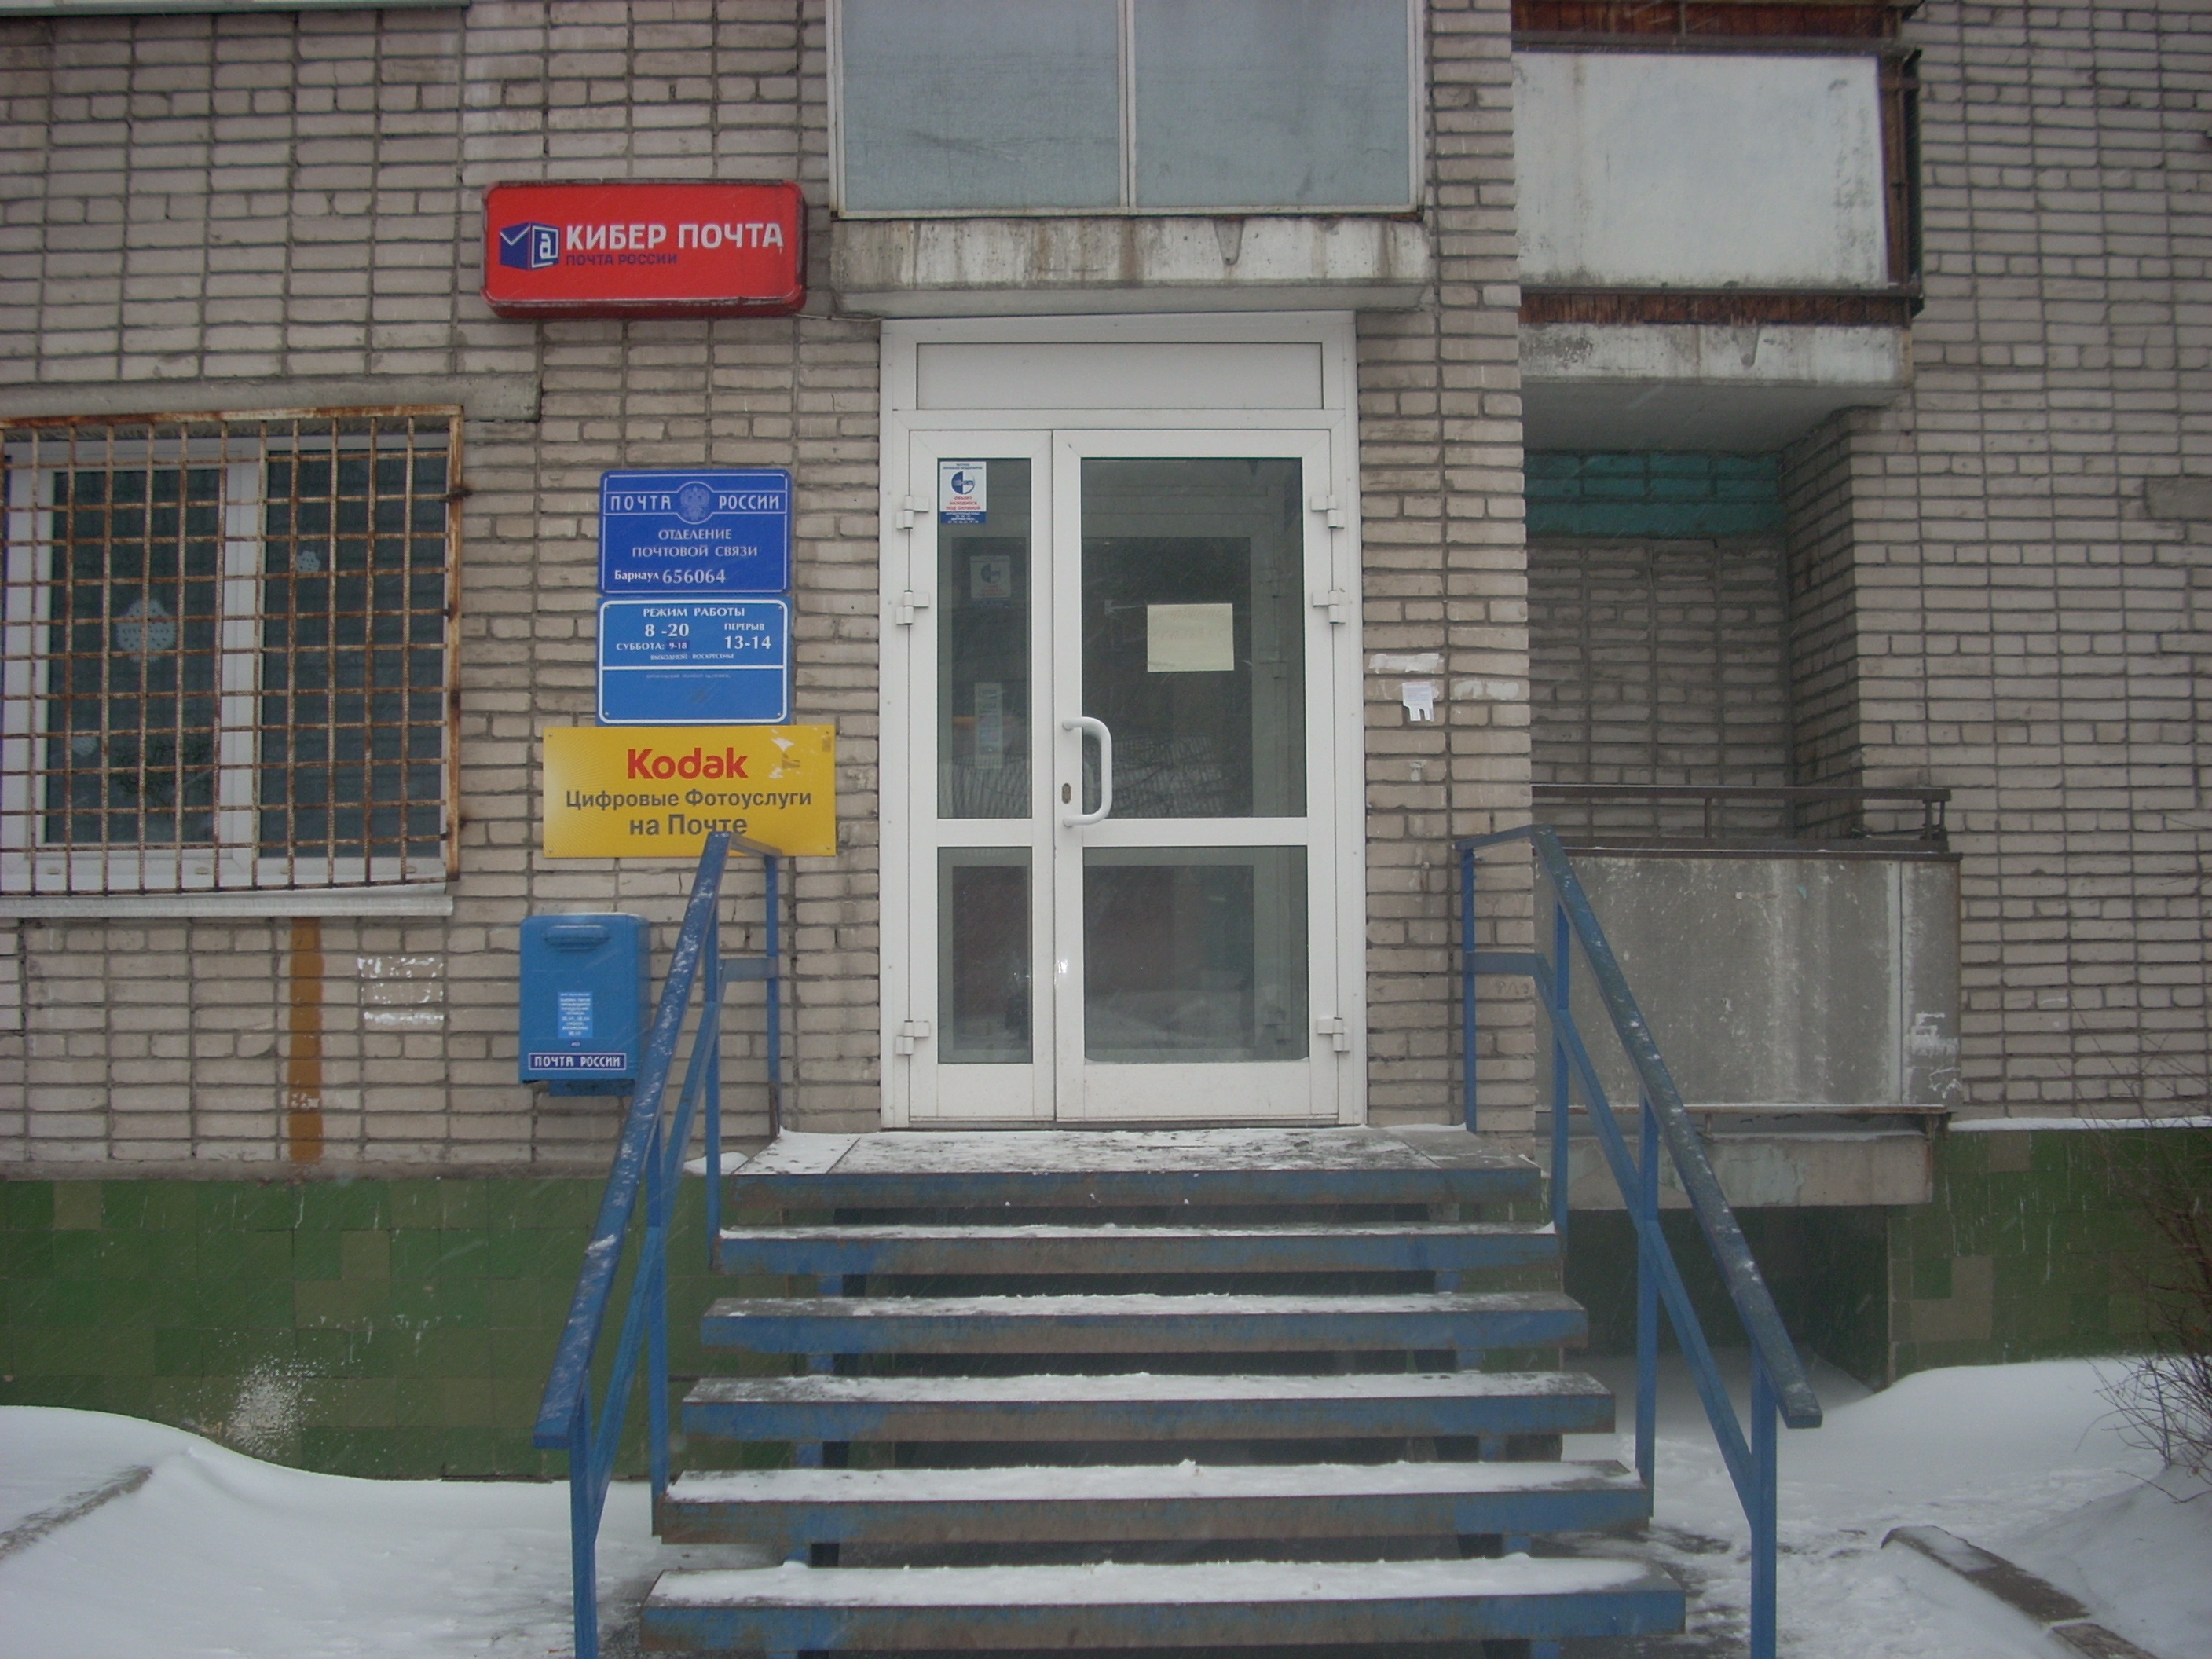 ВХОД, отделение почтовой связи 656064, Алтайский край, Барнаул